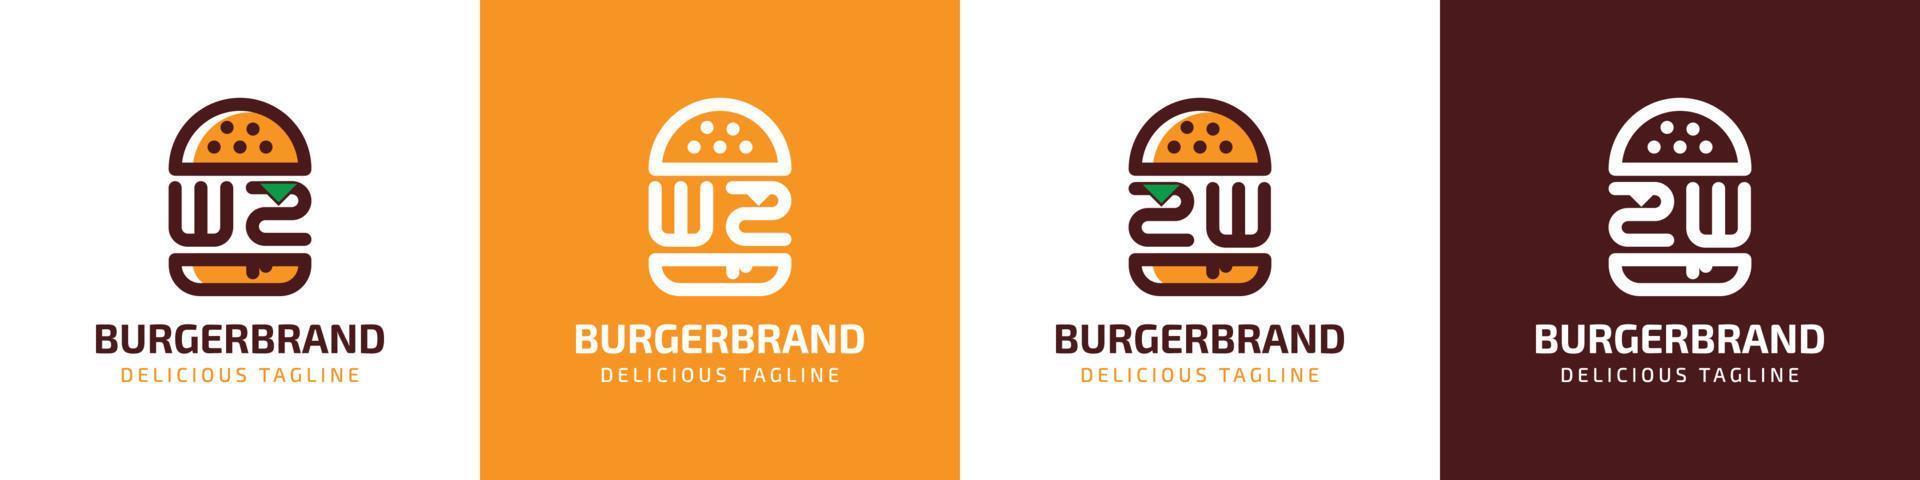 brev wz och zw burger logotyp, lämplig för några företag relaterad till burger med wz eller zw initialer. vektor